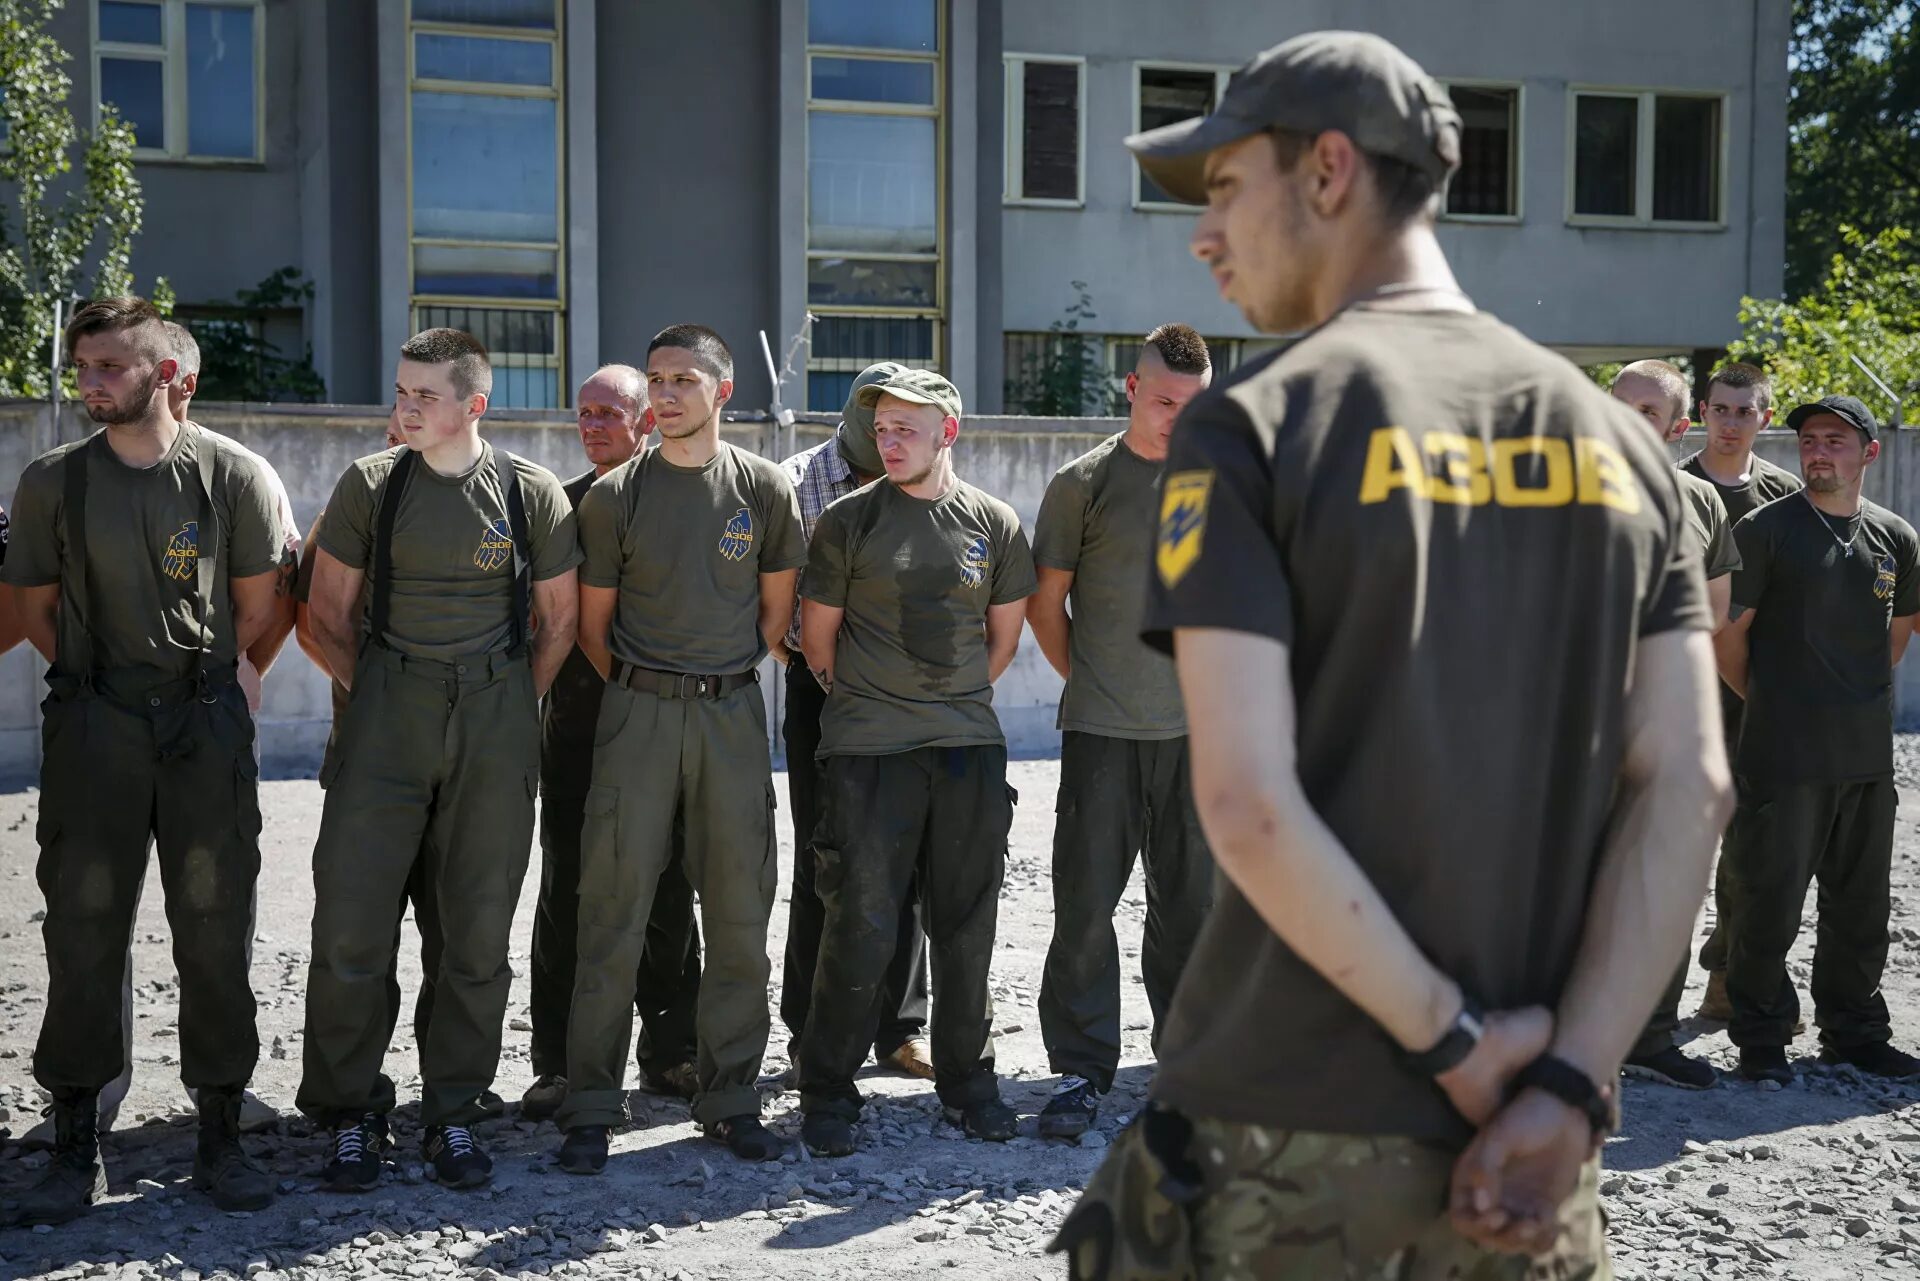 volunteers azov battalion 2015 neo nazi